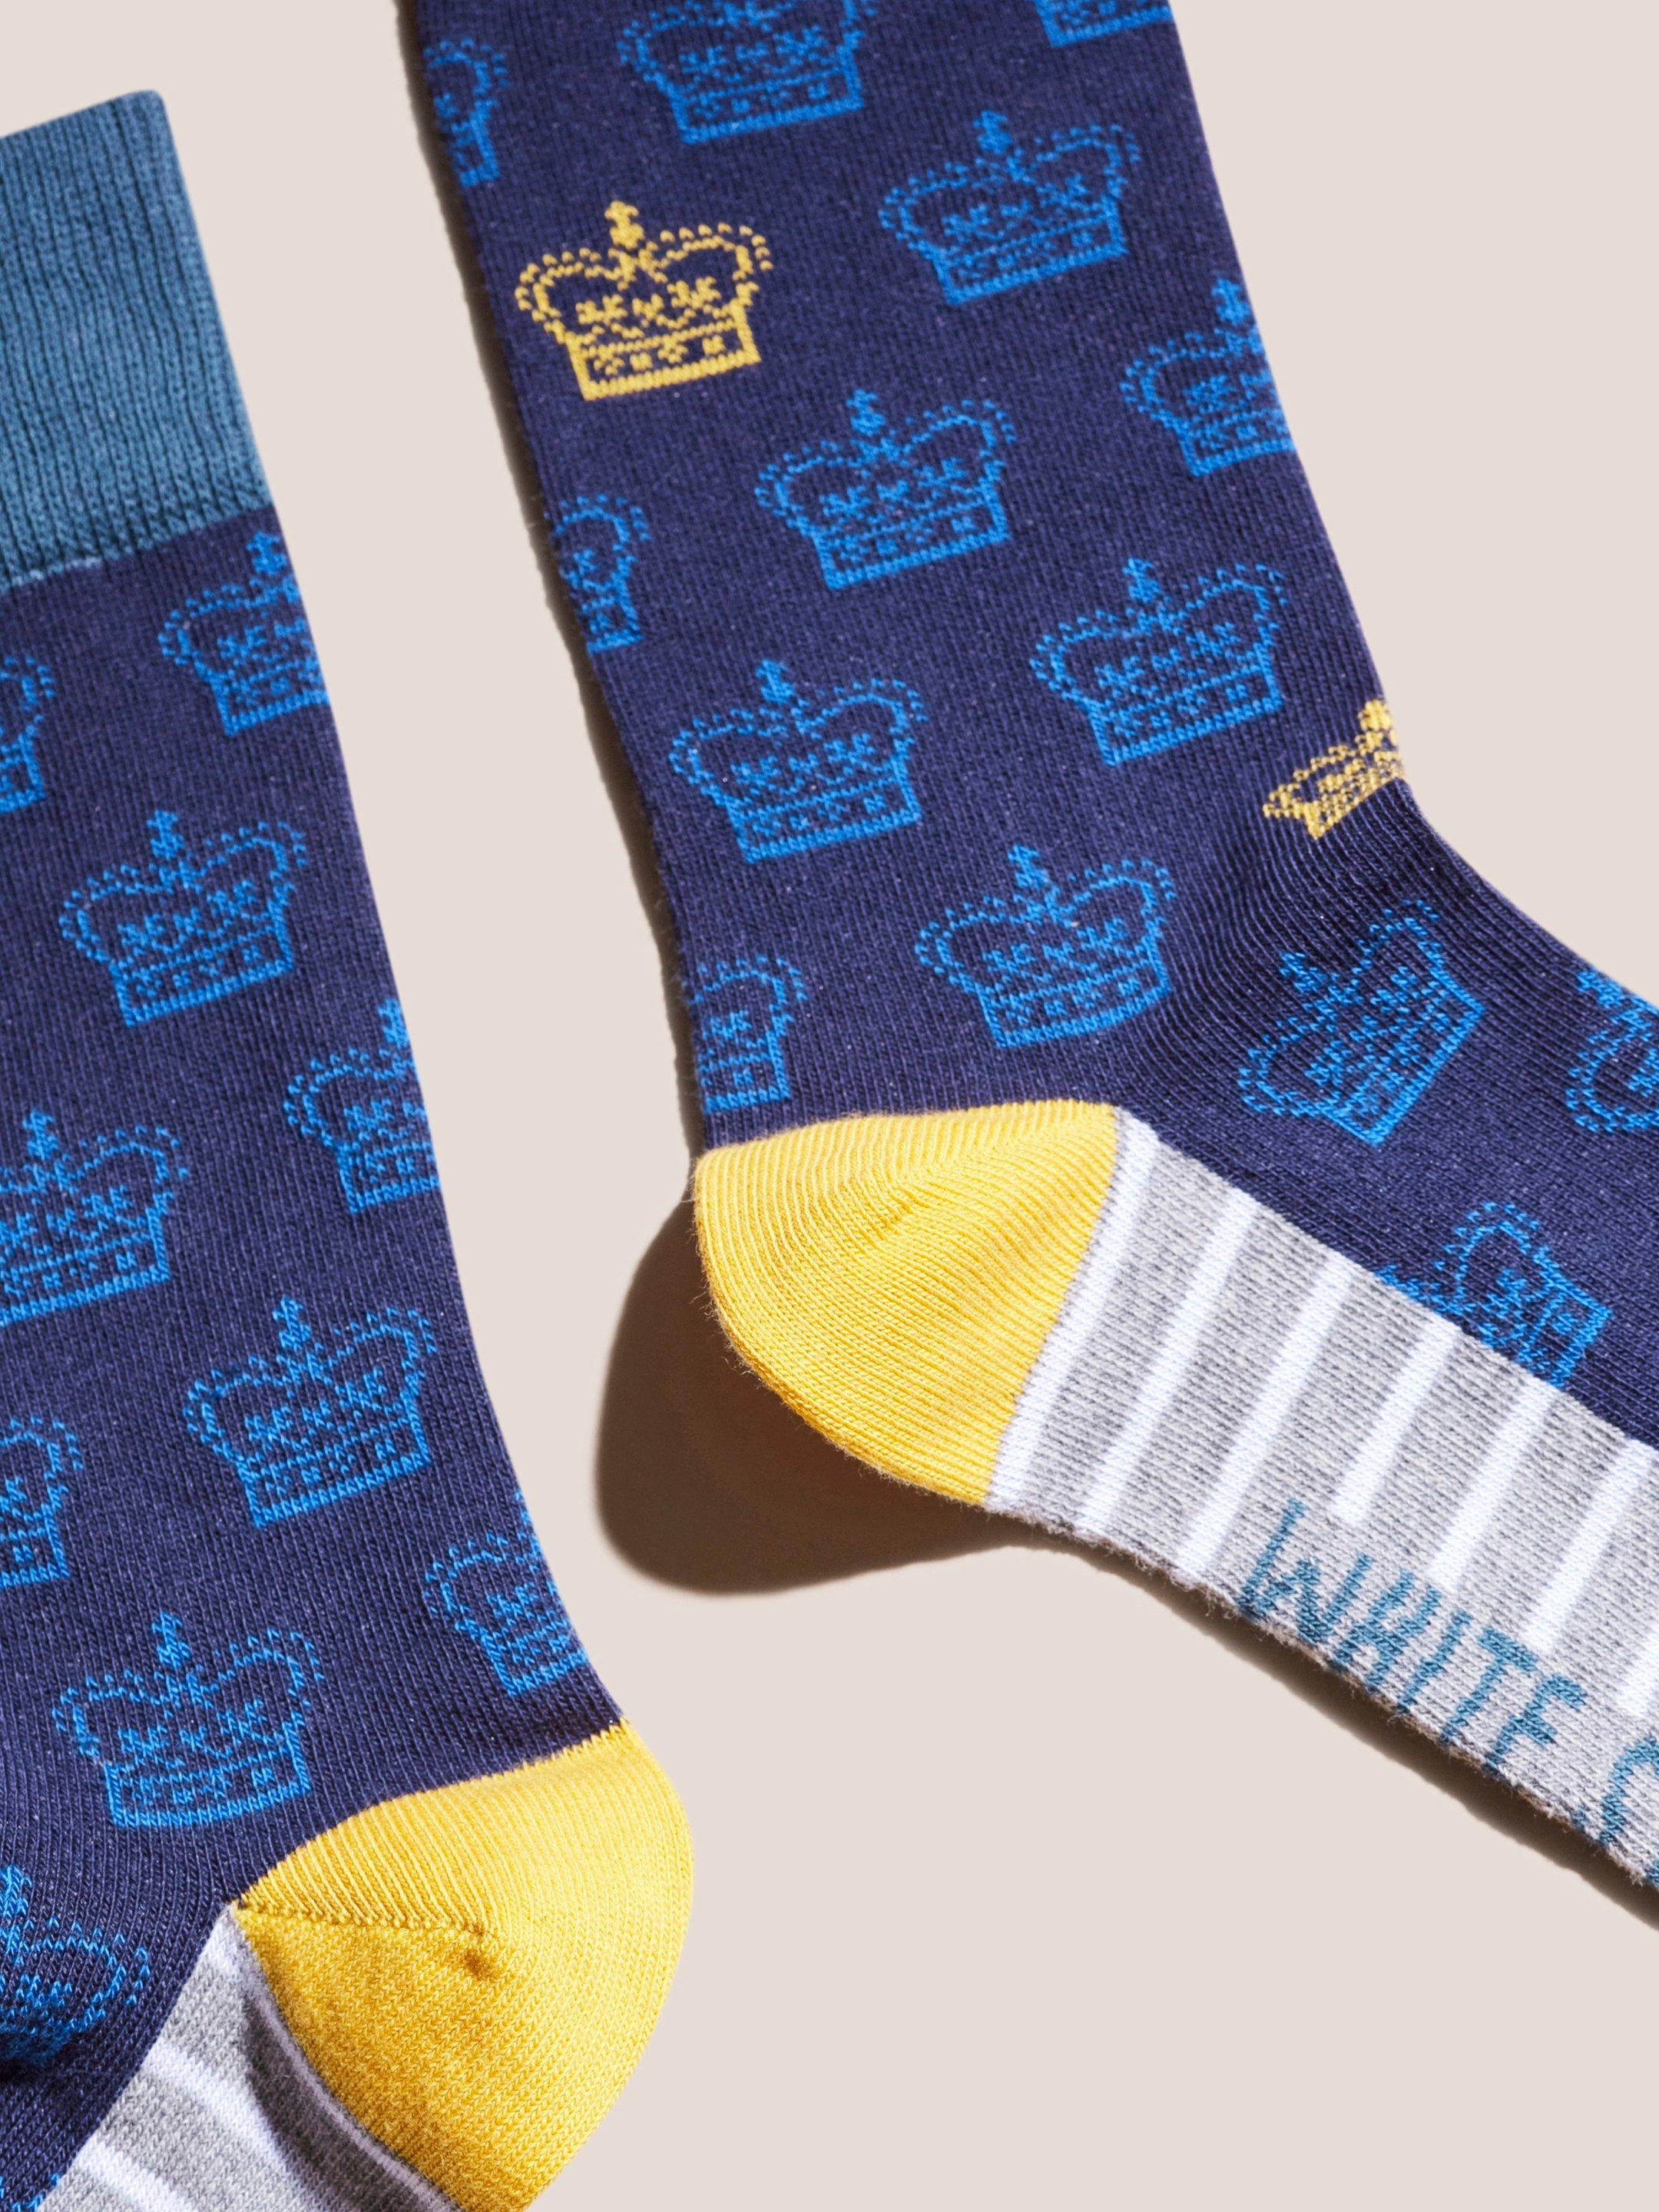 King Crown Ankle Socks in NAVY MULTI - FLAT DETAIL